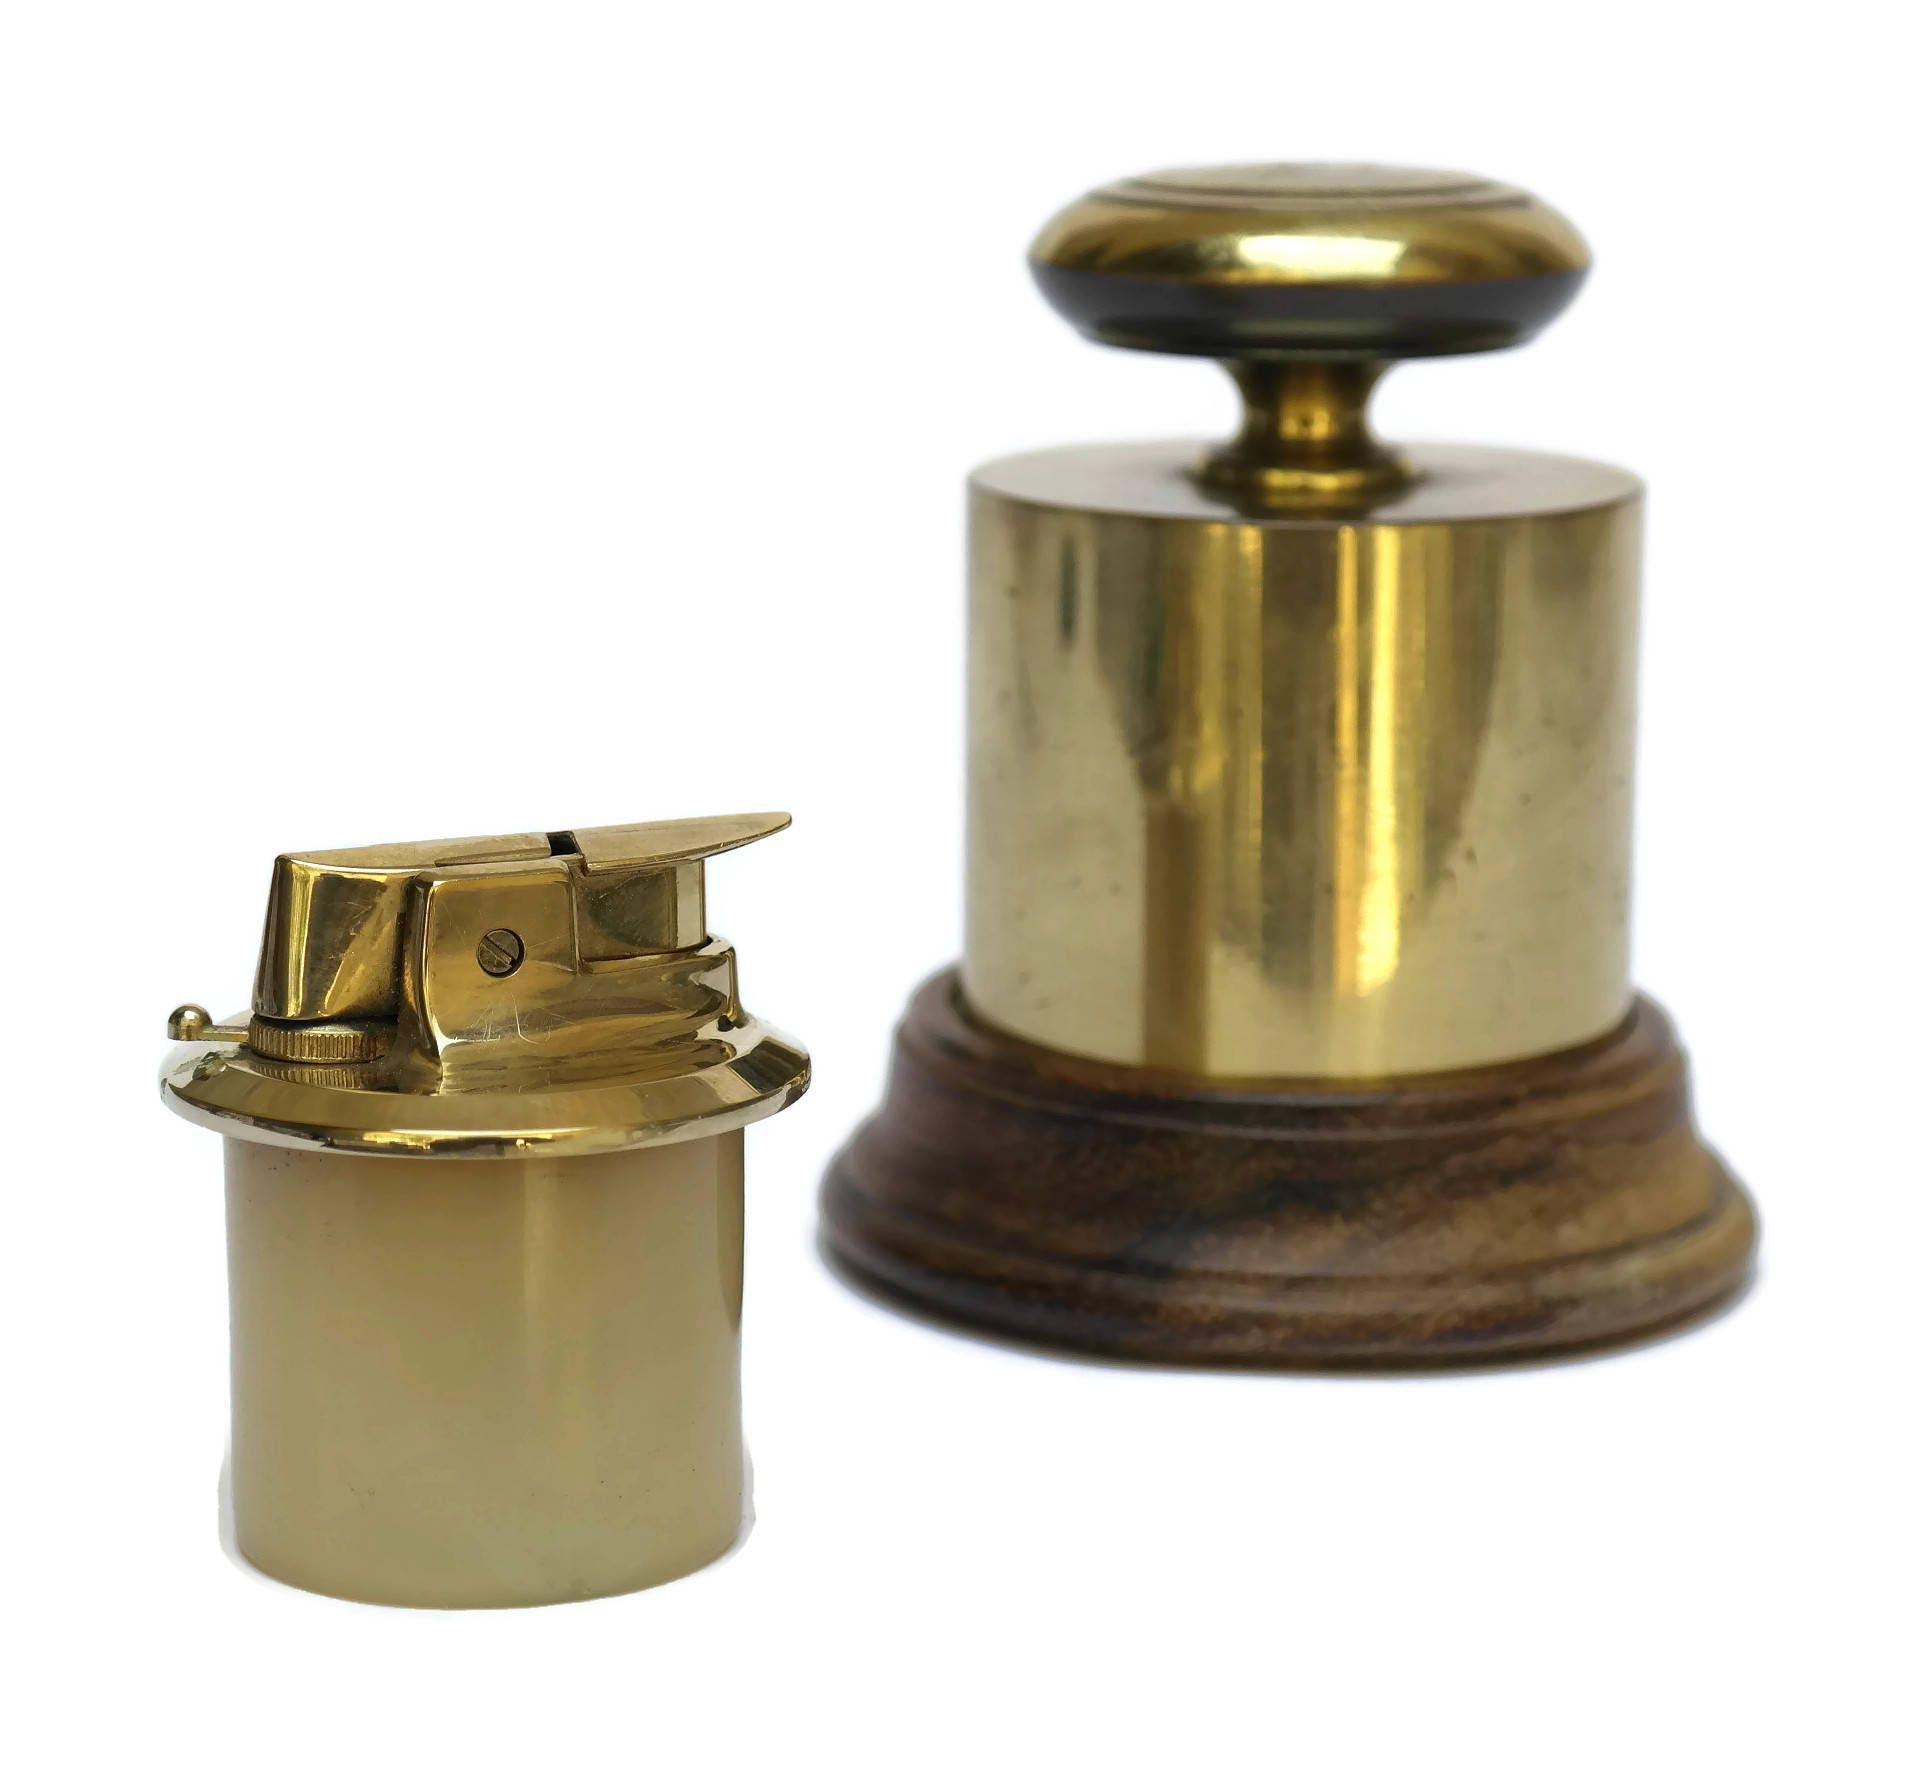 Vintage Lighter. Vintage Brass Weight Cigarette Lighter with Wooden Base.